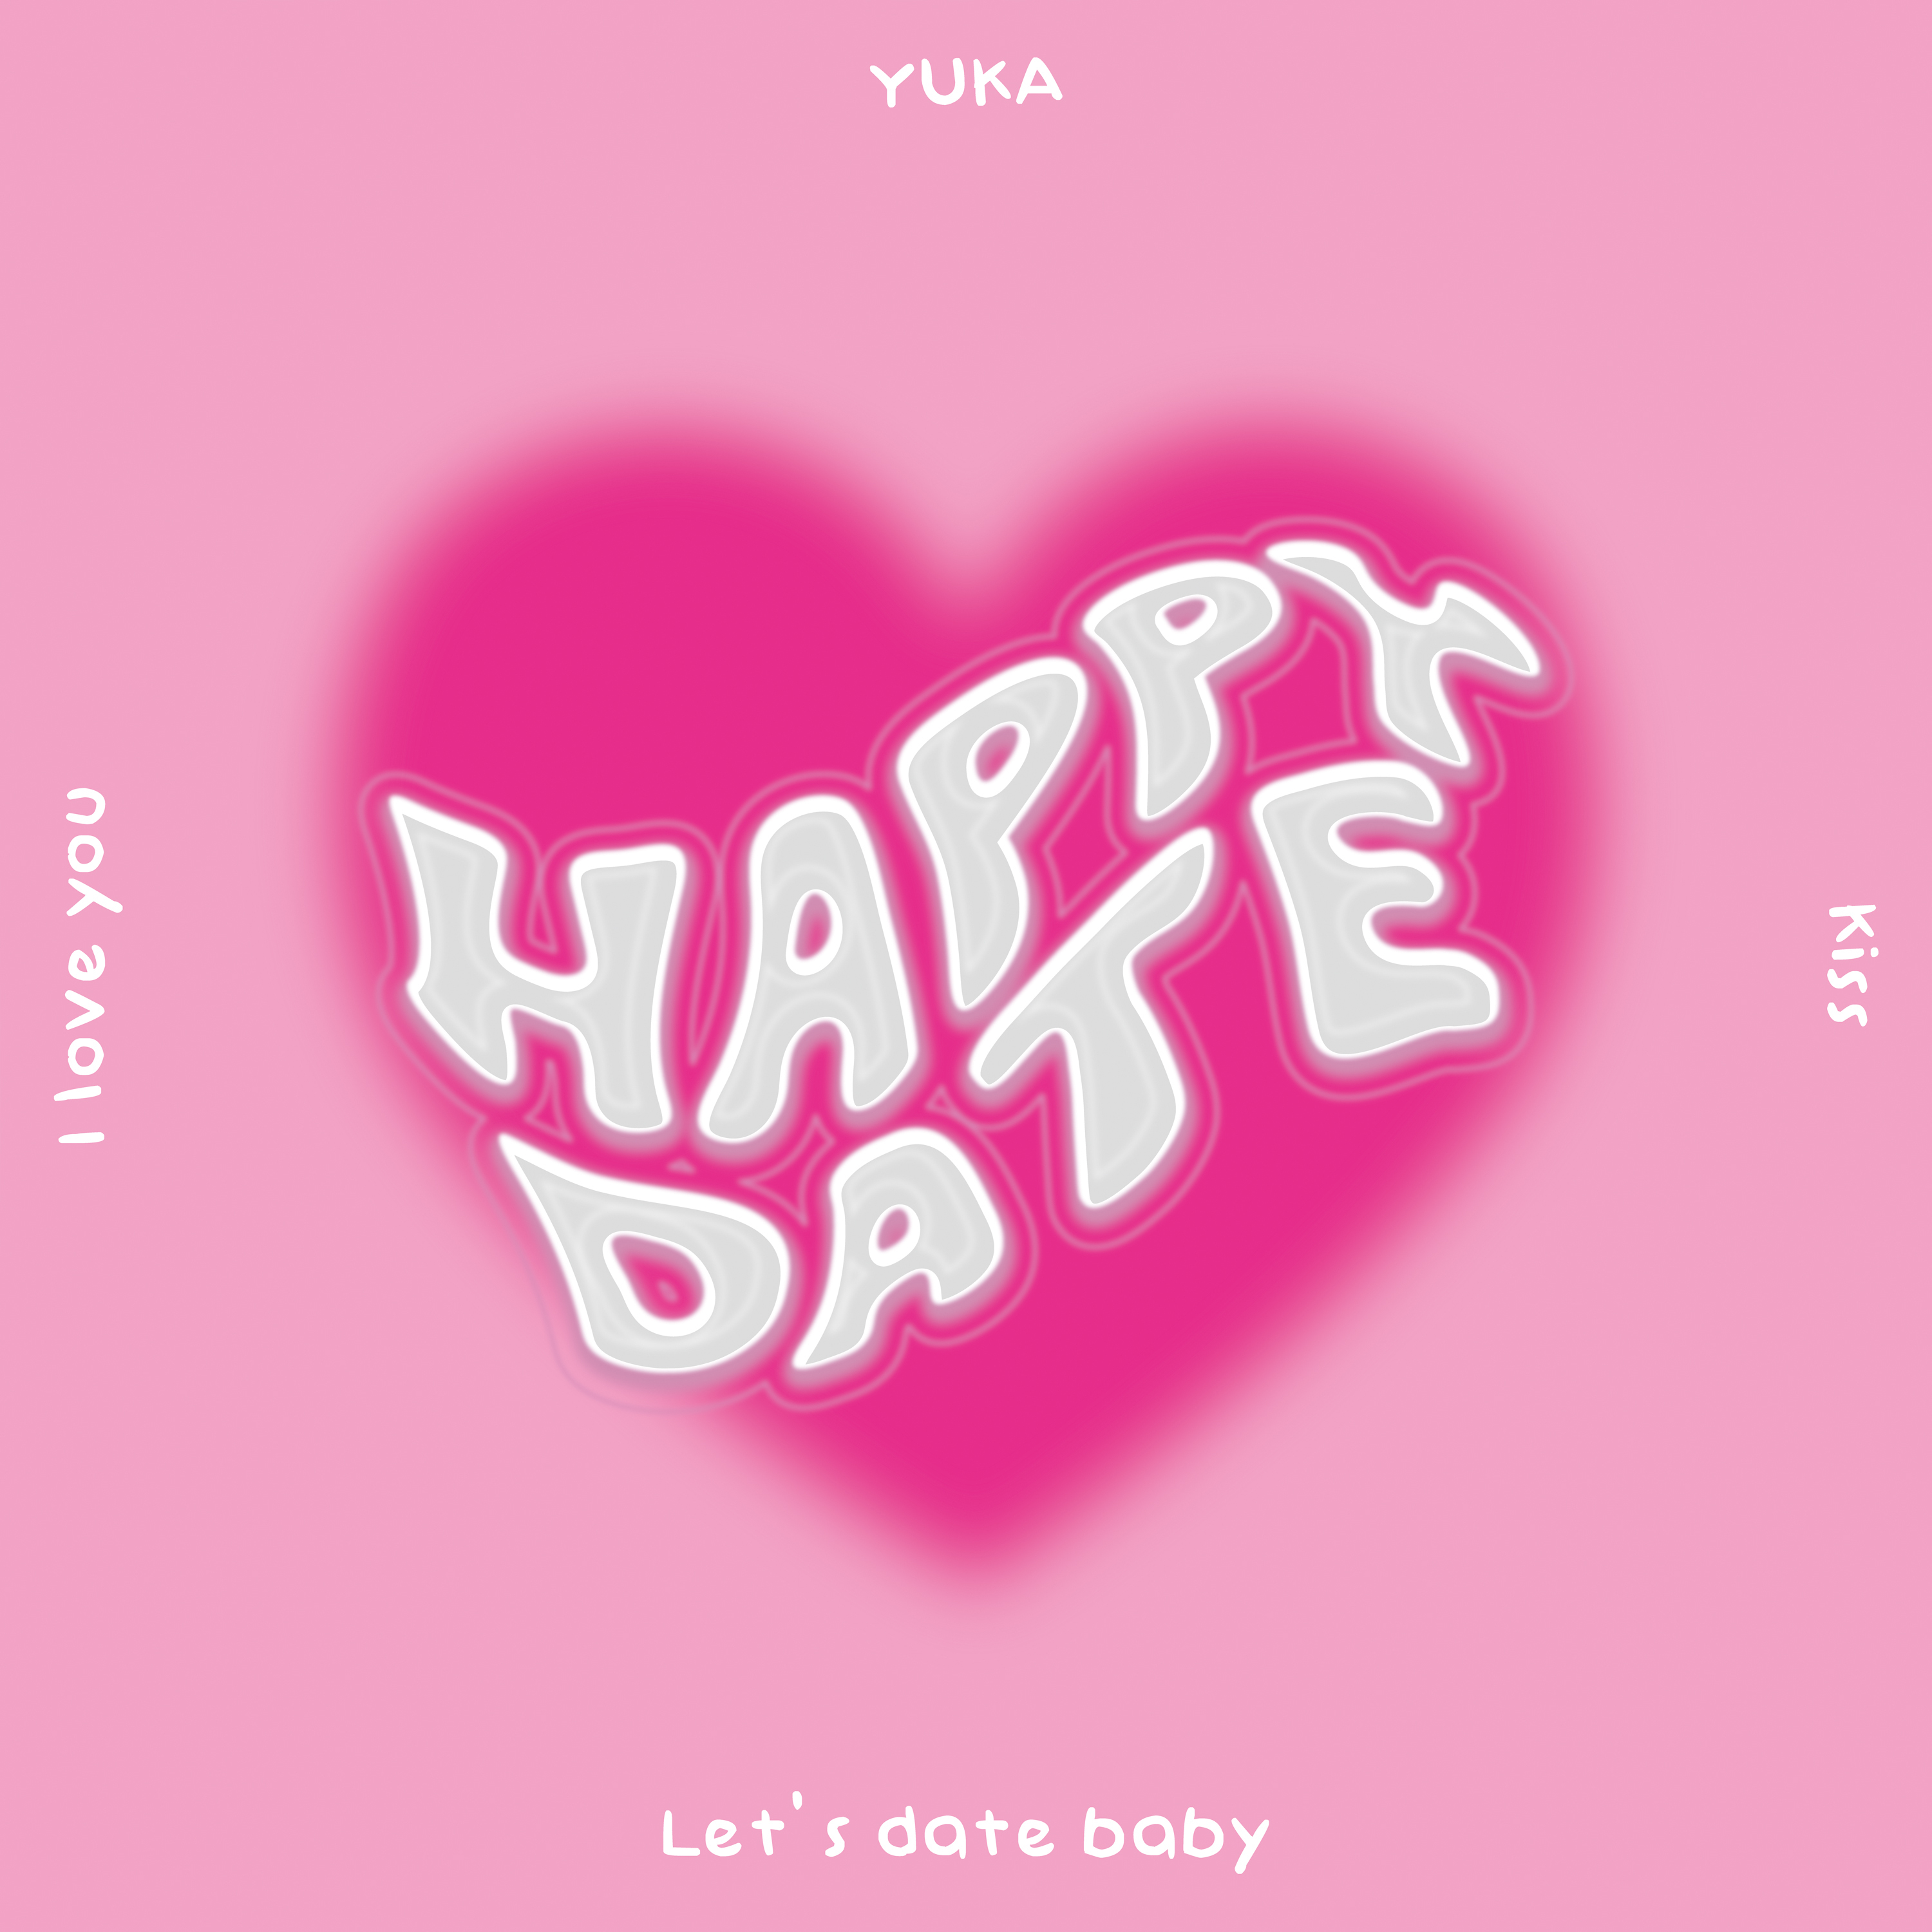 Yuka_happy_date